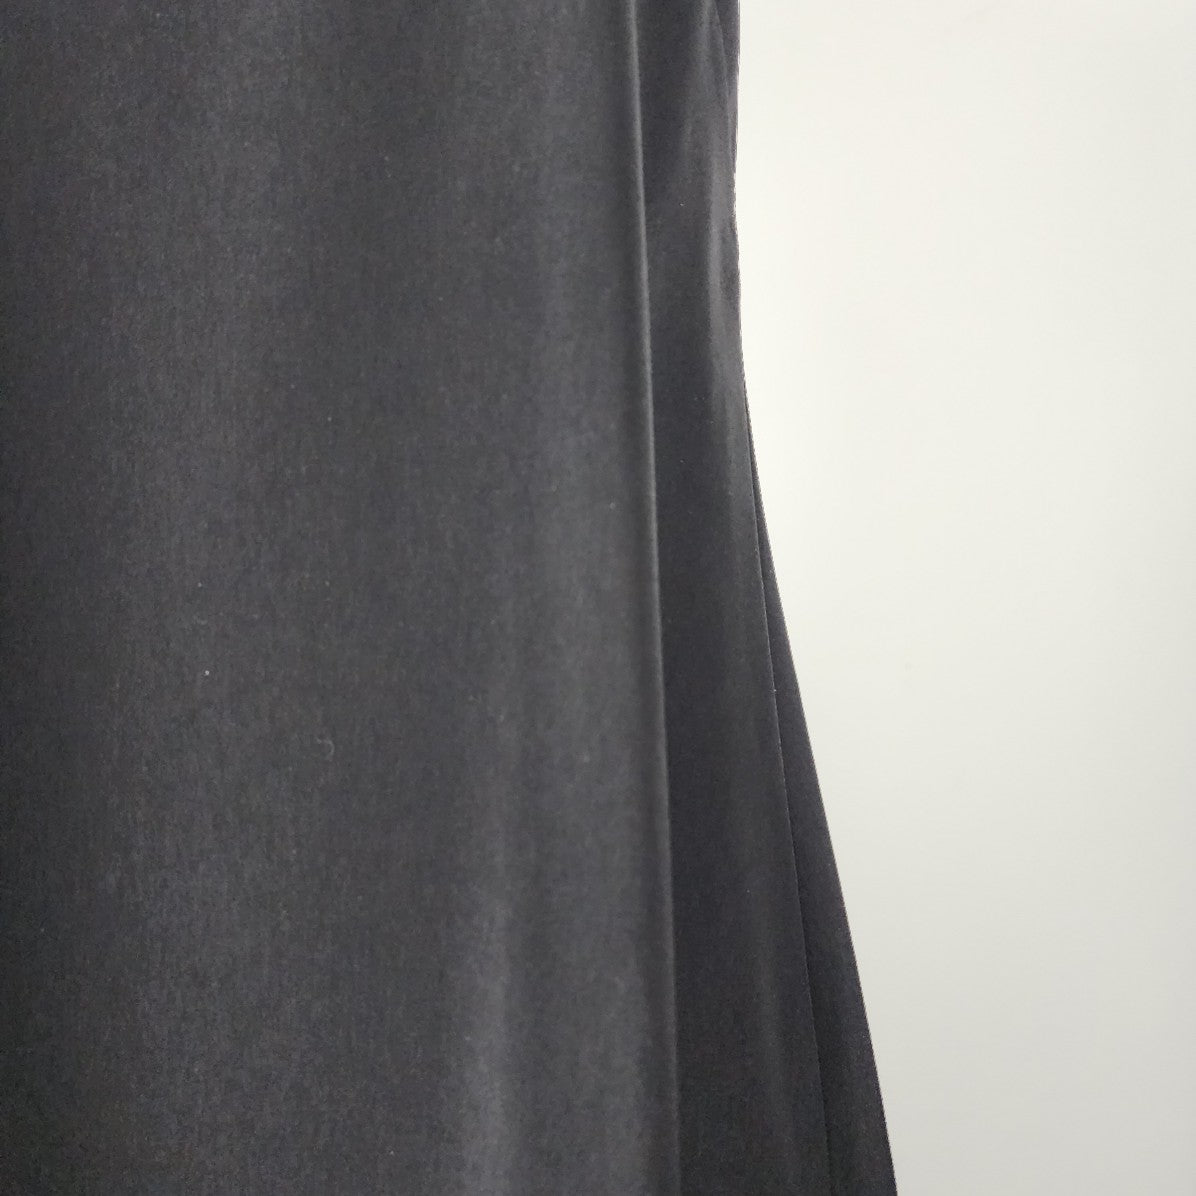 Calvin Klein Black A-Line Mini Dress Size 10